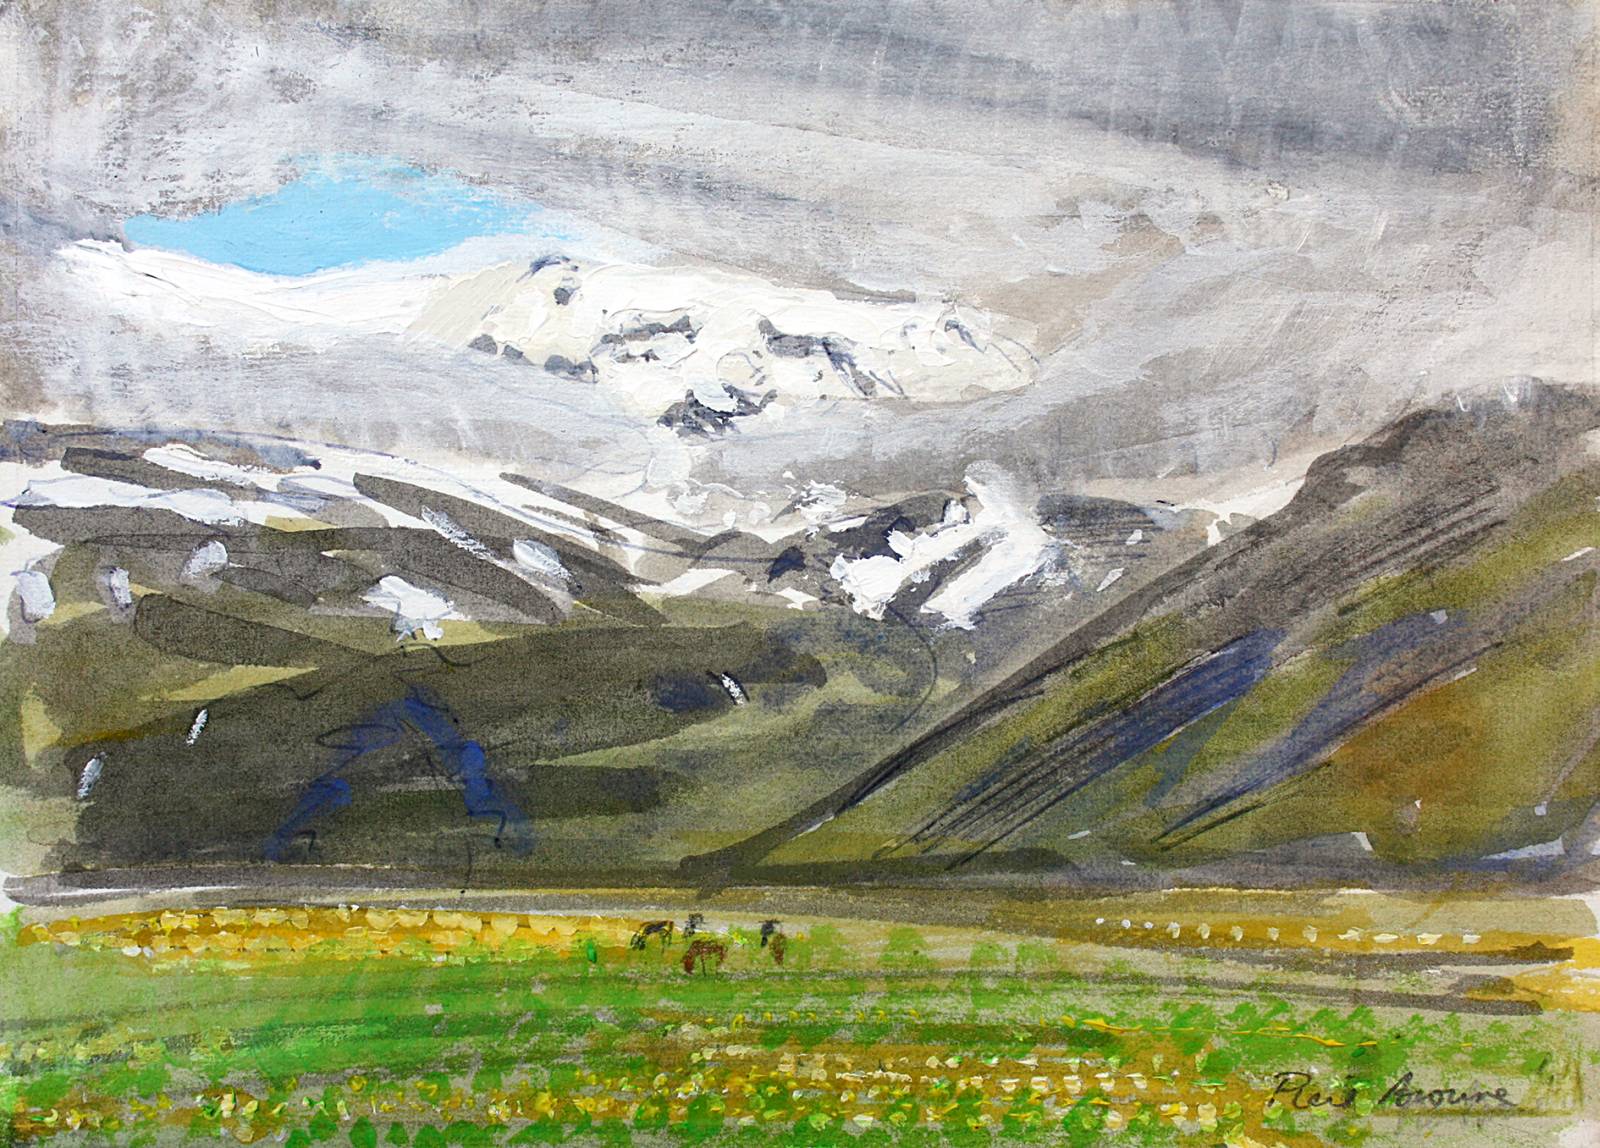 Eyjafjallajokull Glacier: June in Iceland